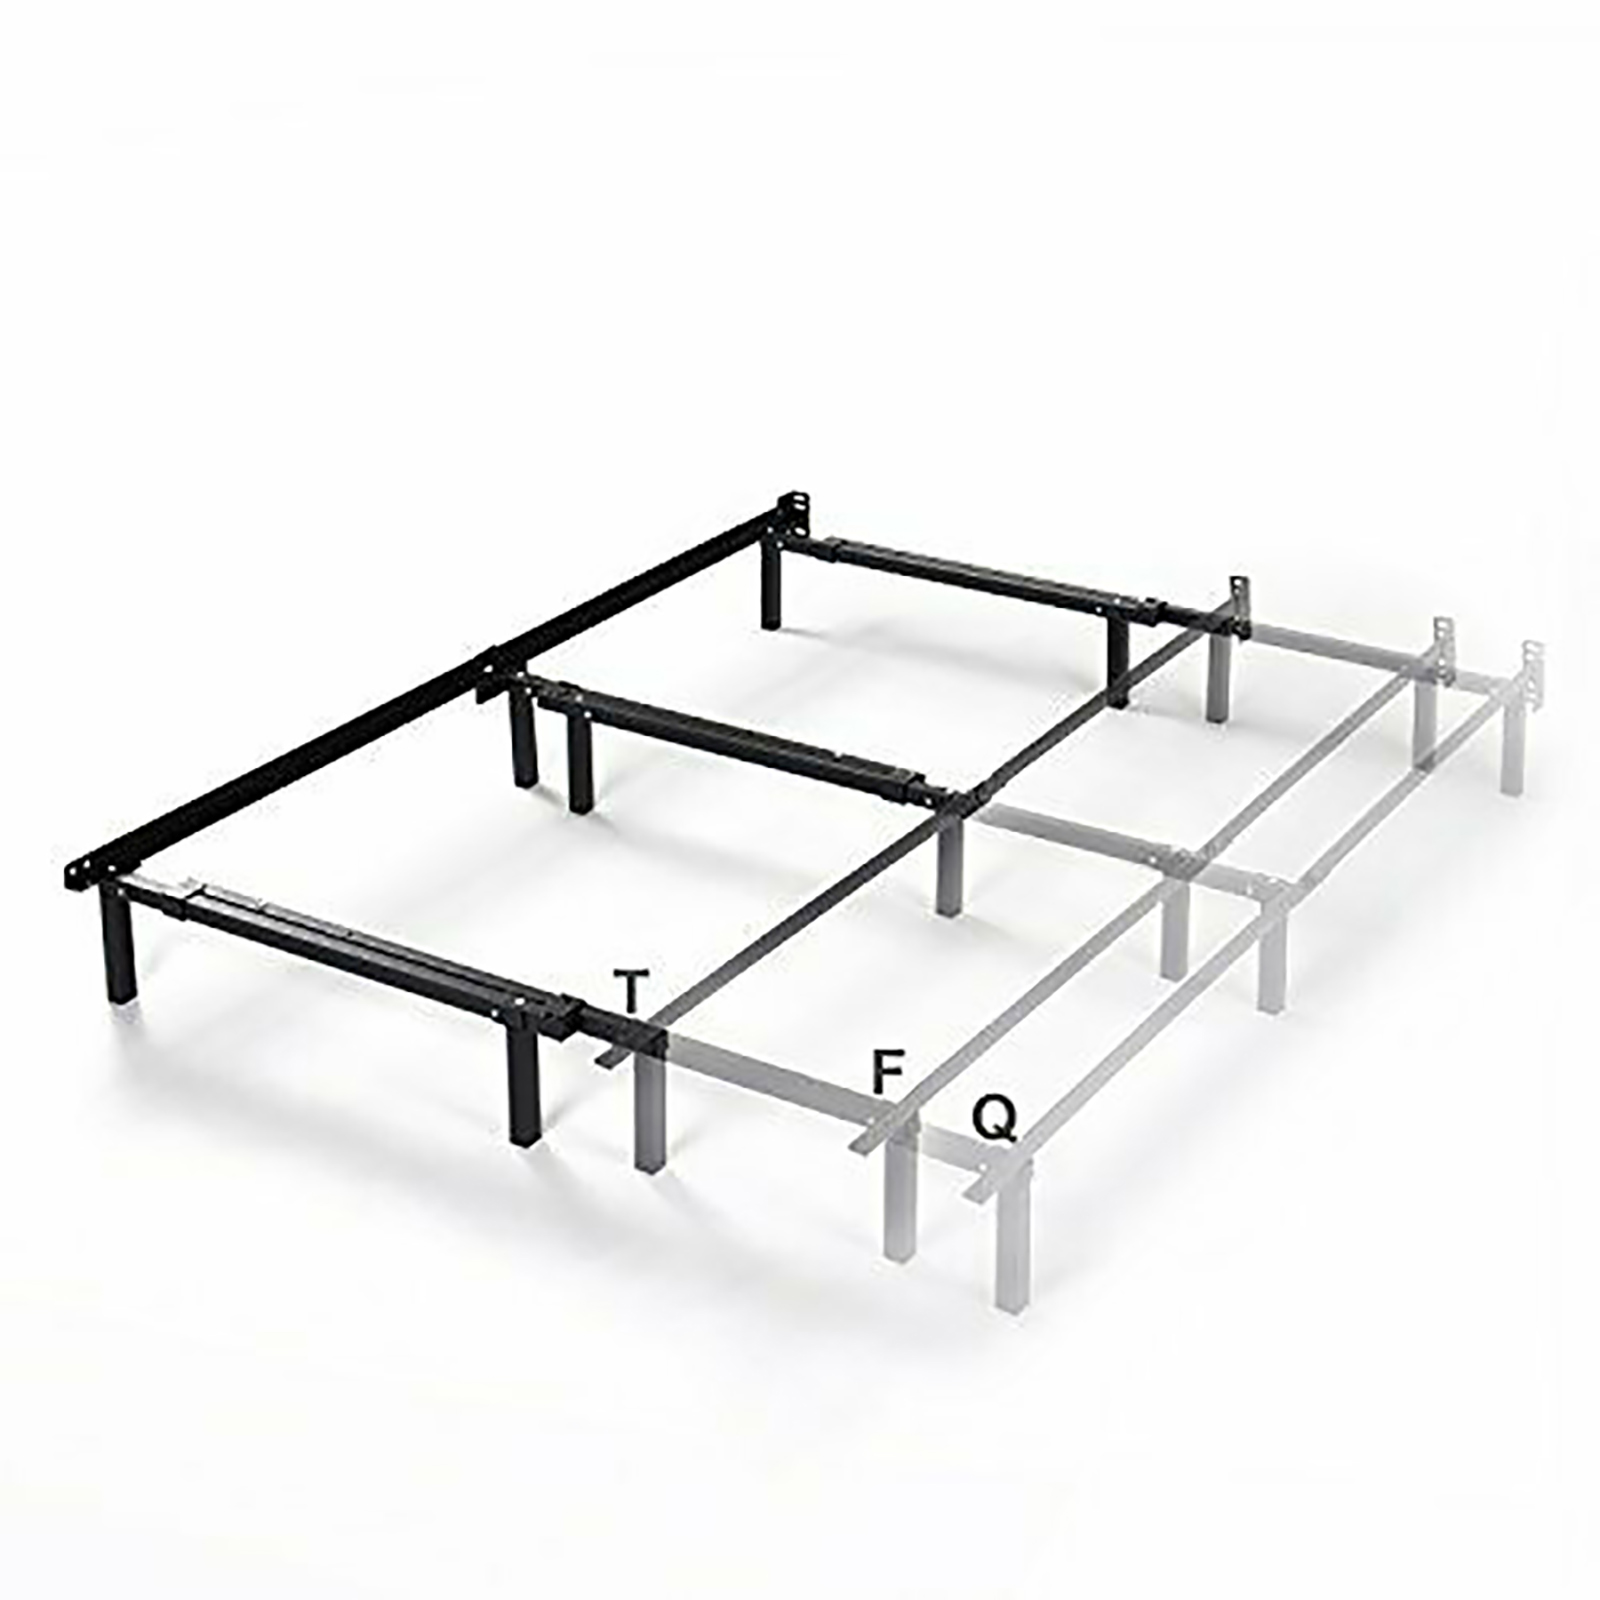 Zinus Compact Adjustable Steel Bed, Zinus Queen Bed Frame Dimensions